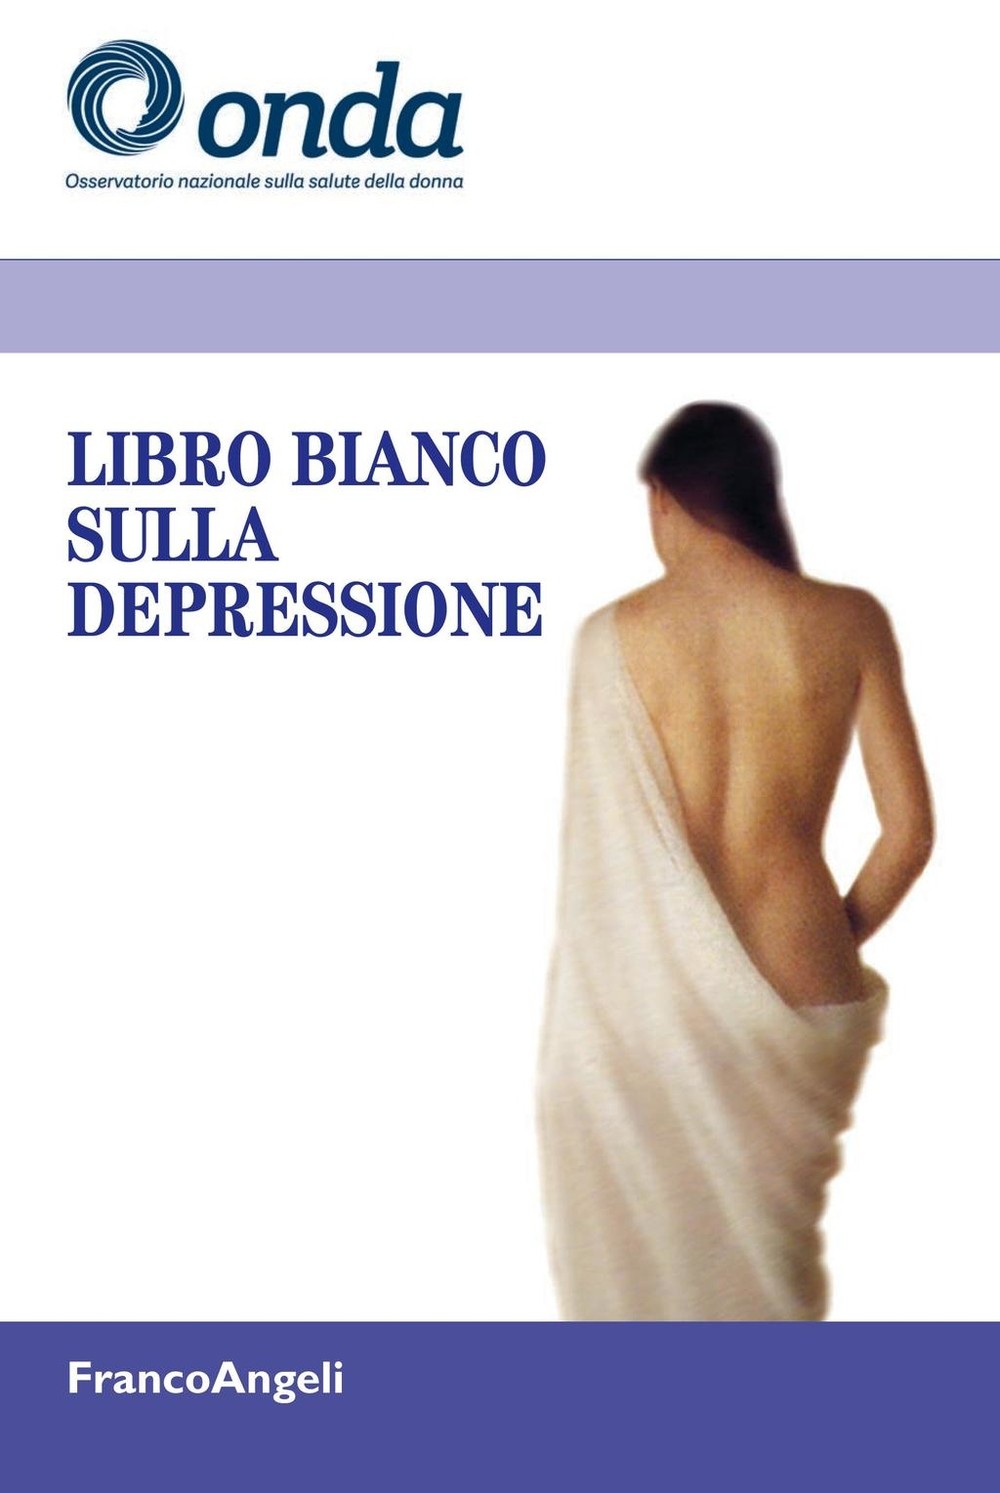 Il libro bianco sulla depressione femminile: il male di cui si parla poco